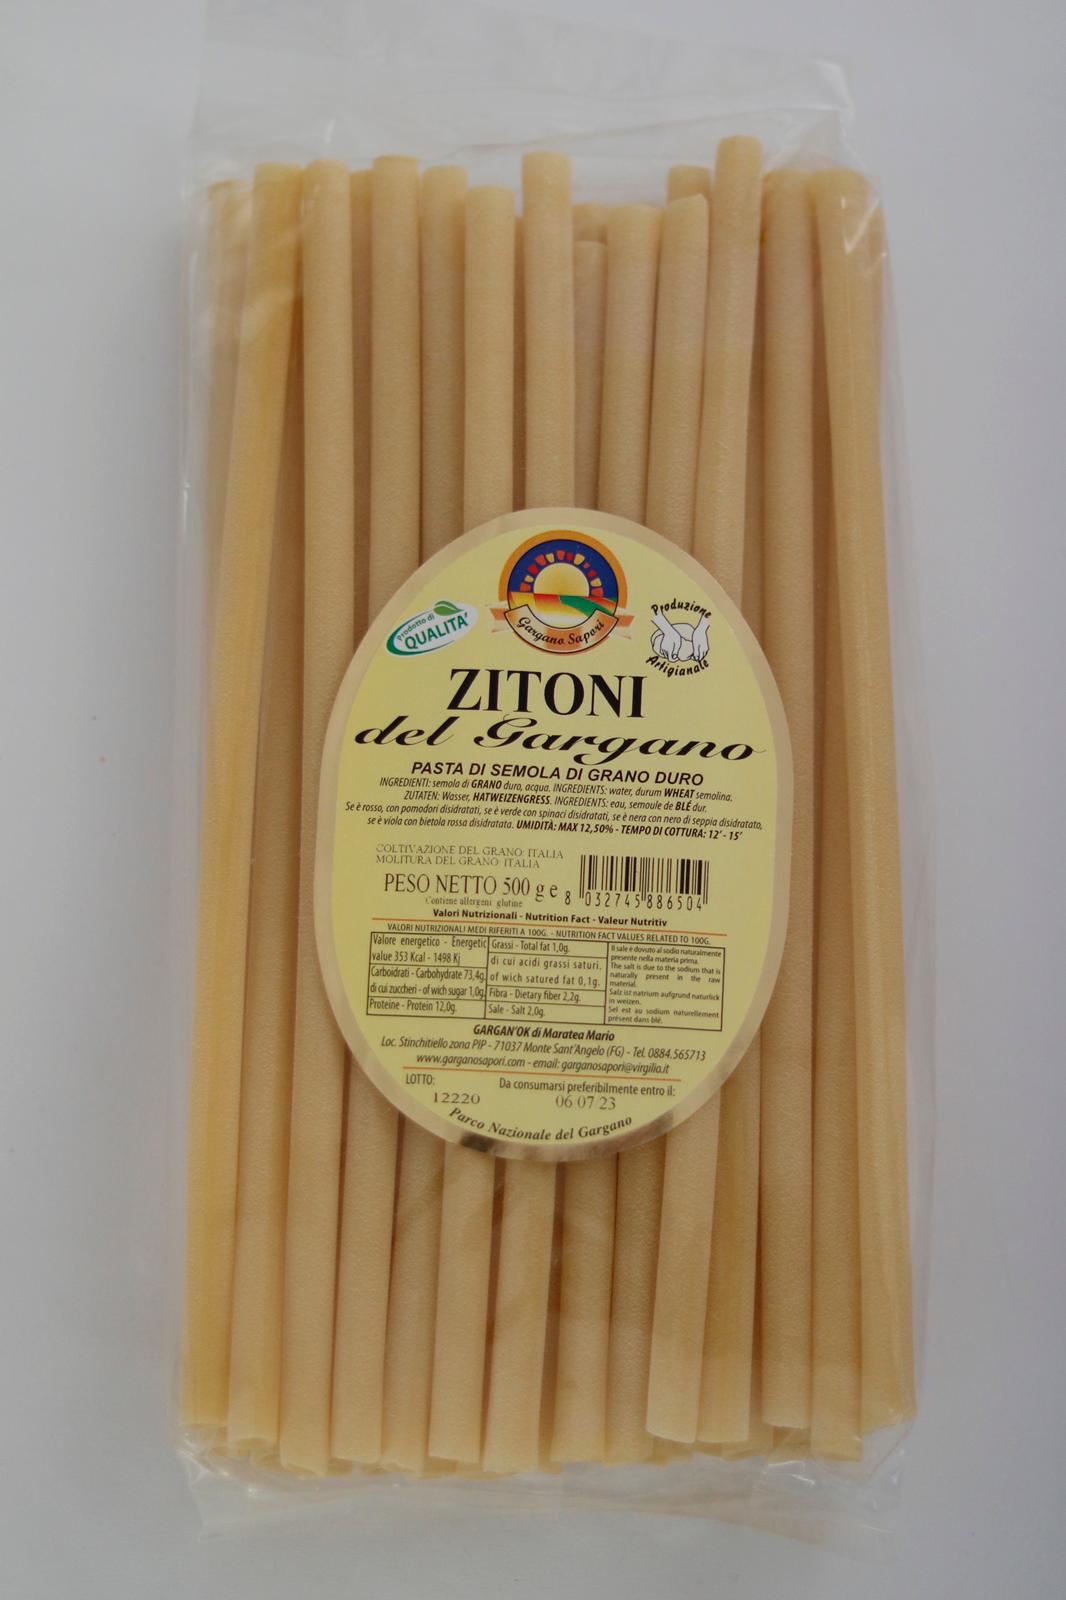 ZITONI 500 G  - 3 Confezioni - I migliori prodotti Made in Italy da Fiera di Monza Shop - Solo 29.95€! Acquista subito su Fiera di Monza Shop!